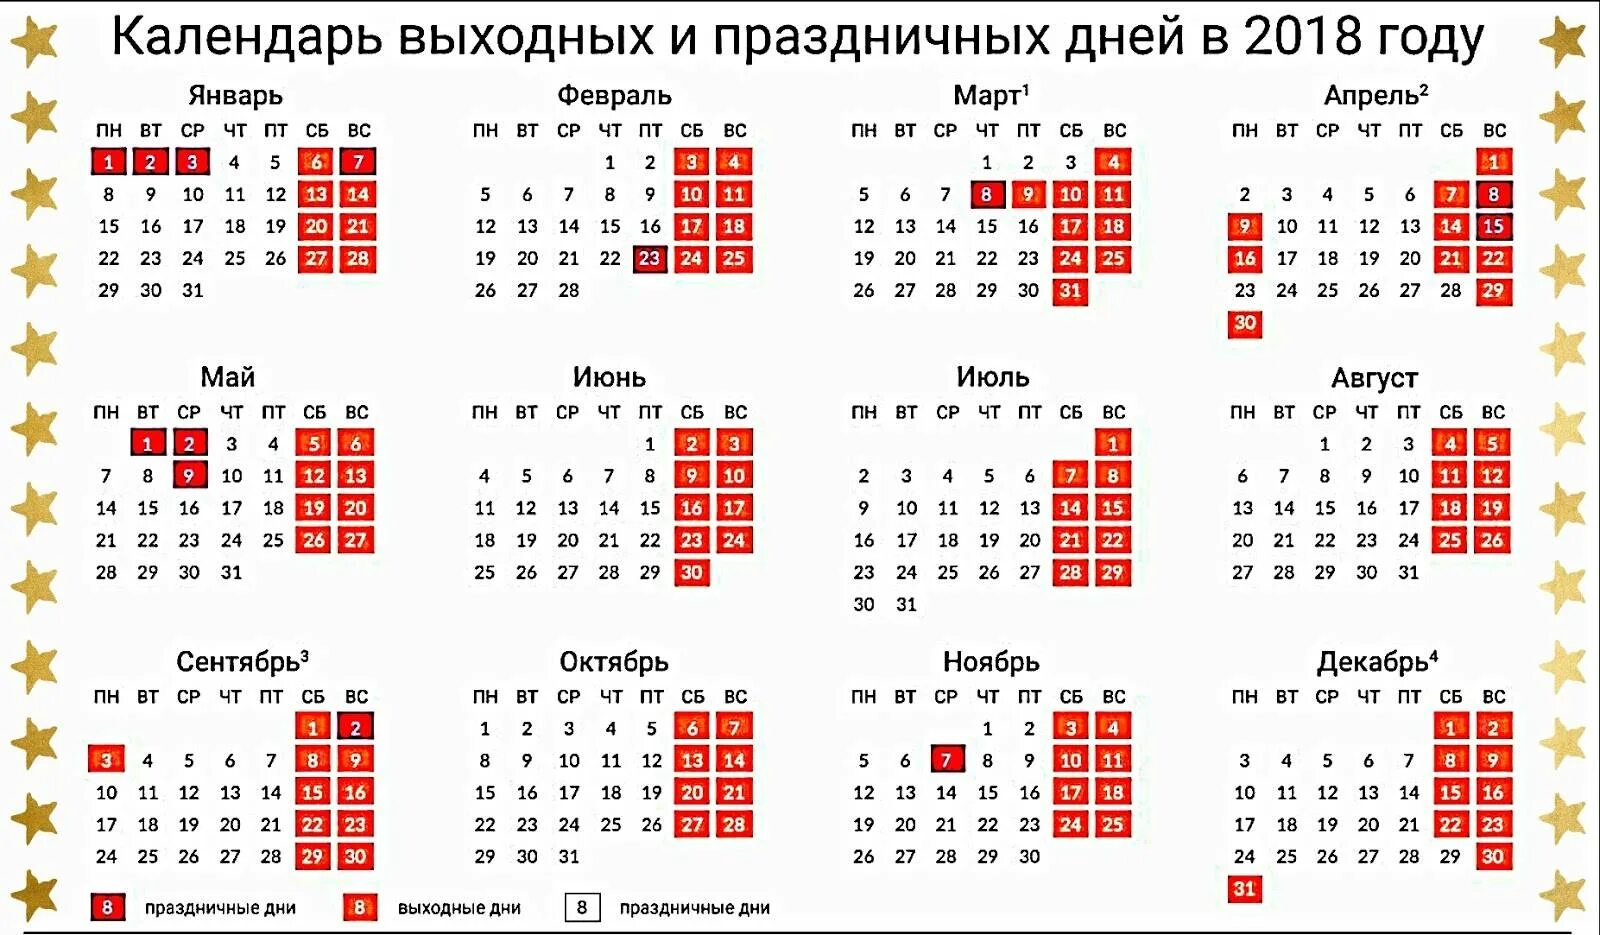 Завтра выходной или рабочий день в москве. Календарь праздников. Календарь выходных. Календаарьпраздничных дней. Алендарь праздничных дней.